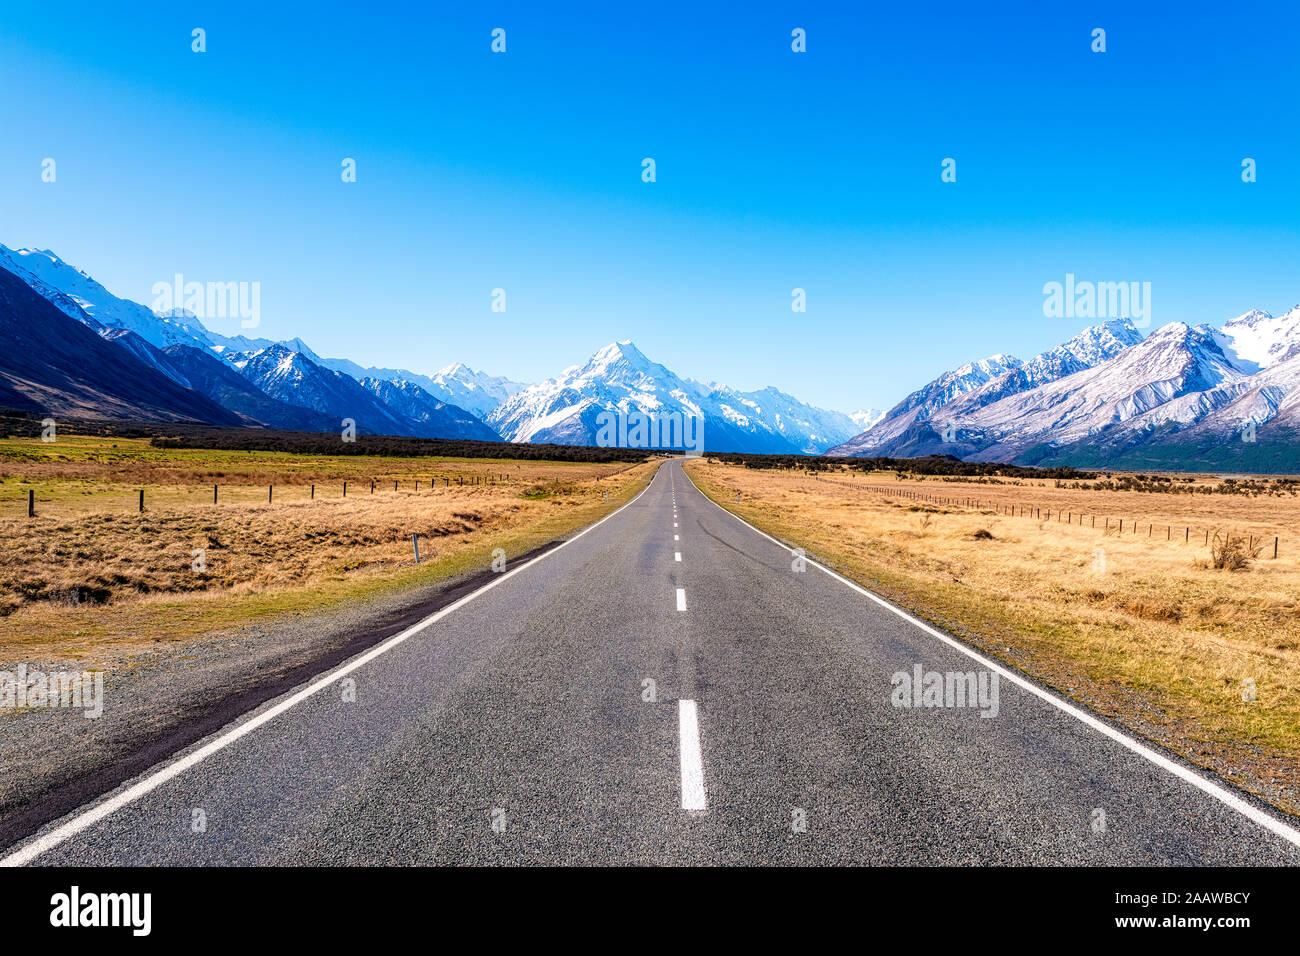 Nouvelle Zélande, île du Sud, la diminution de l'autoroute en direction de Starlight vue montagnes aux sommets enneigés Banque D'Images